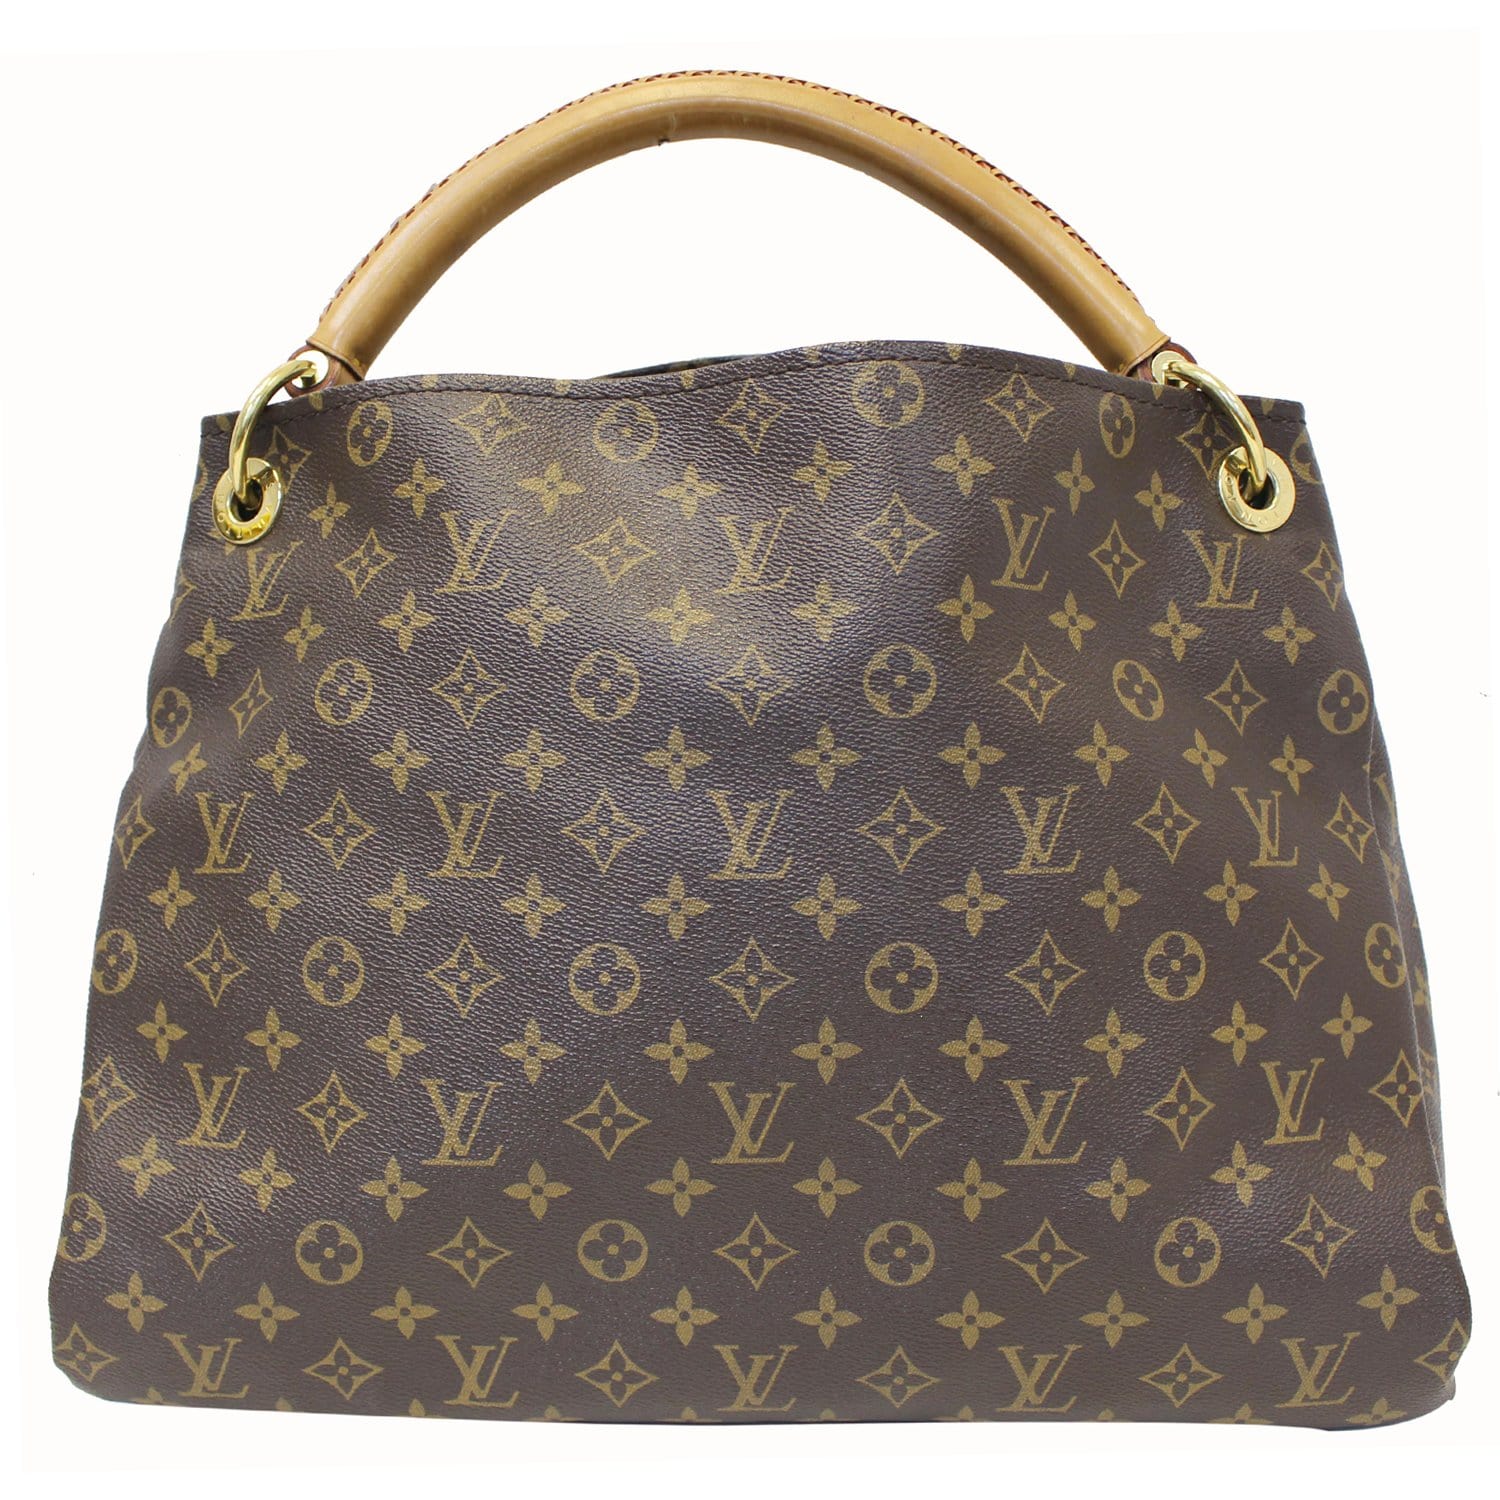 Louis Vuitton Artsy MM - Lv Artsy Monogram Shoulder Bag